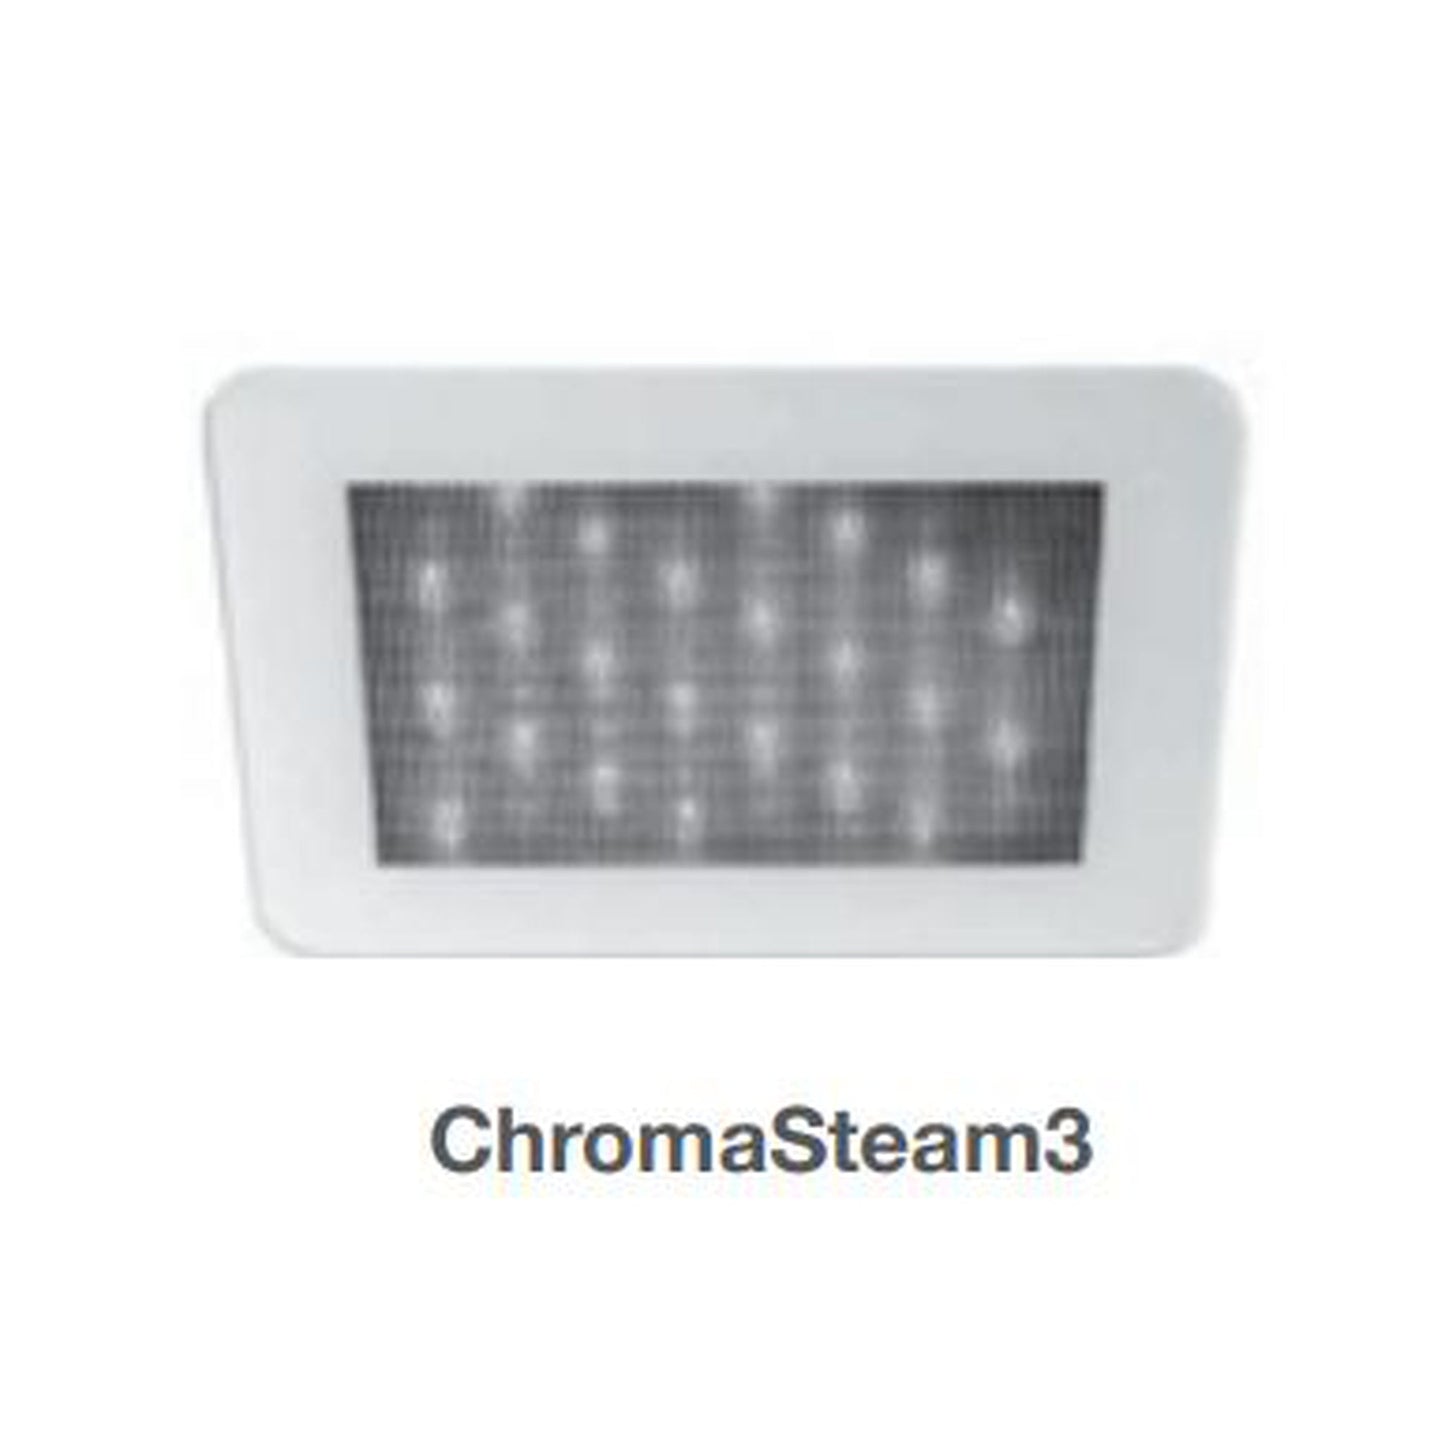 MrSteam Chroma3 Led